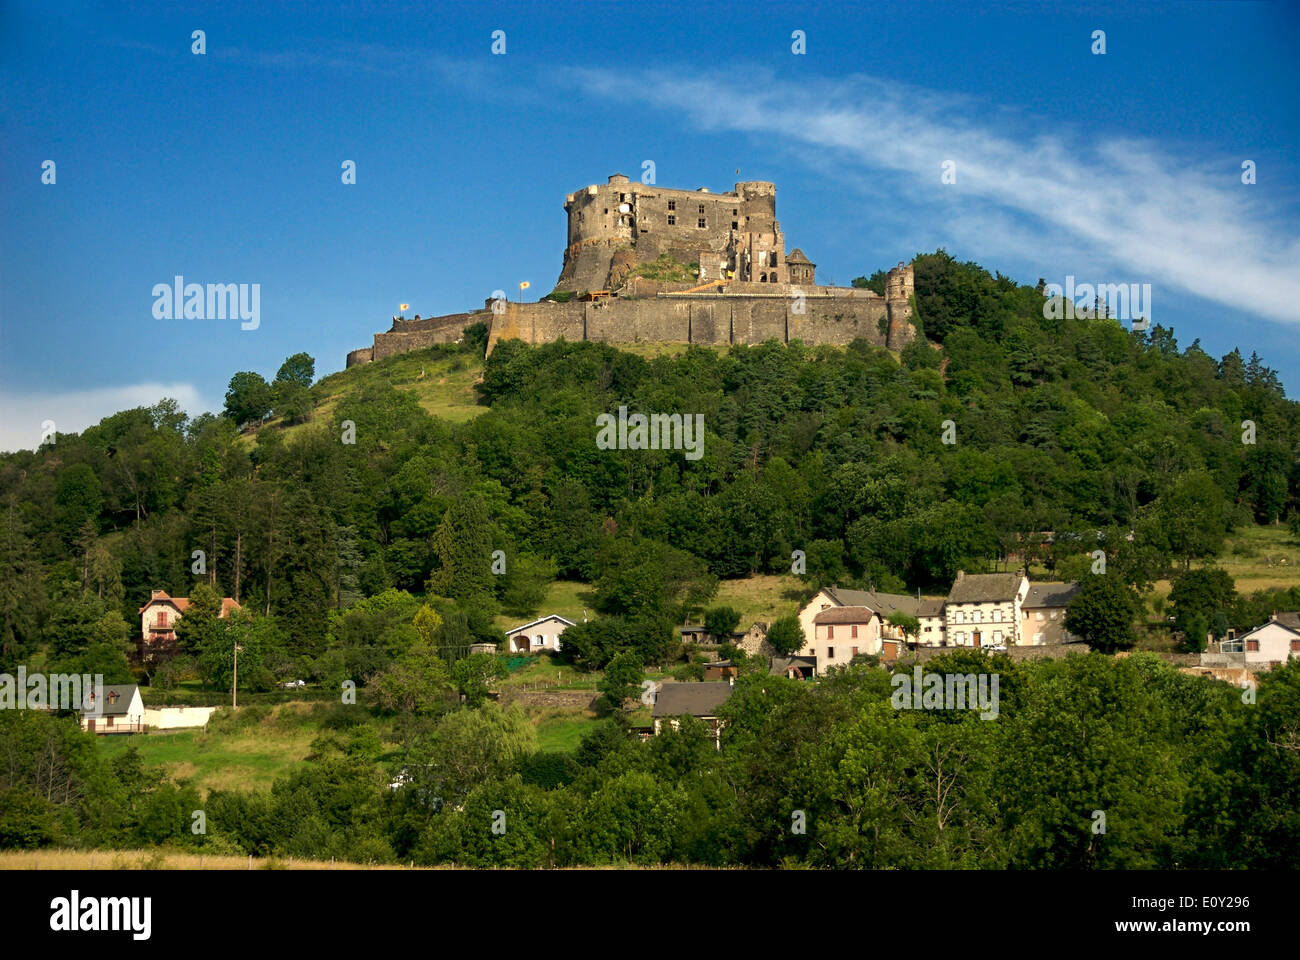 Chateau de Murol castello, Puy-de-Dome, Auvergne Francia, Europa Foto Stock